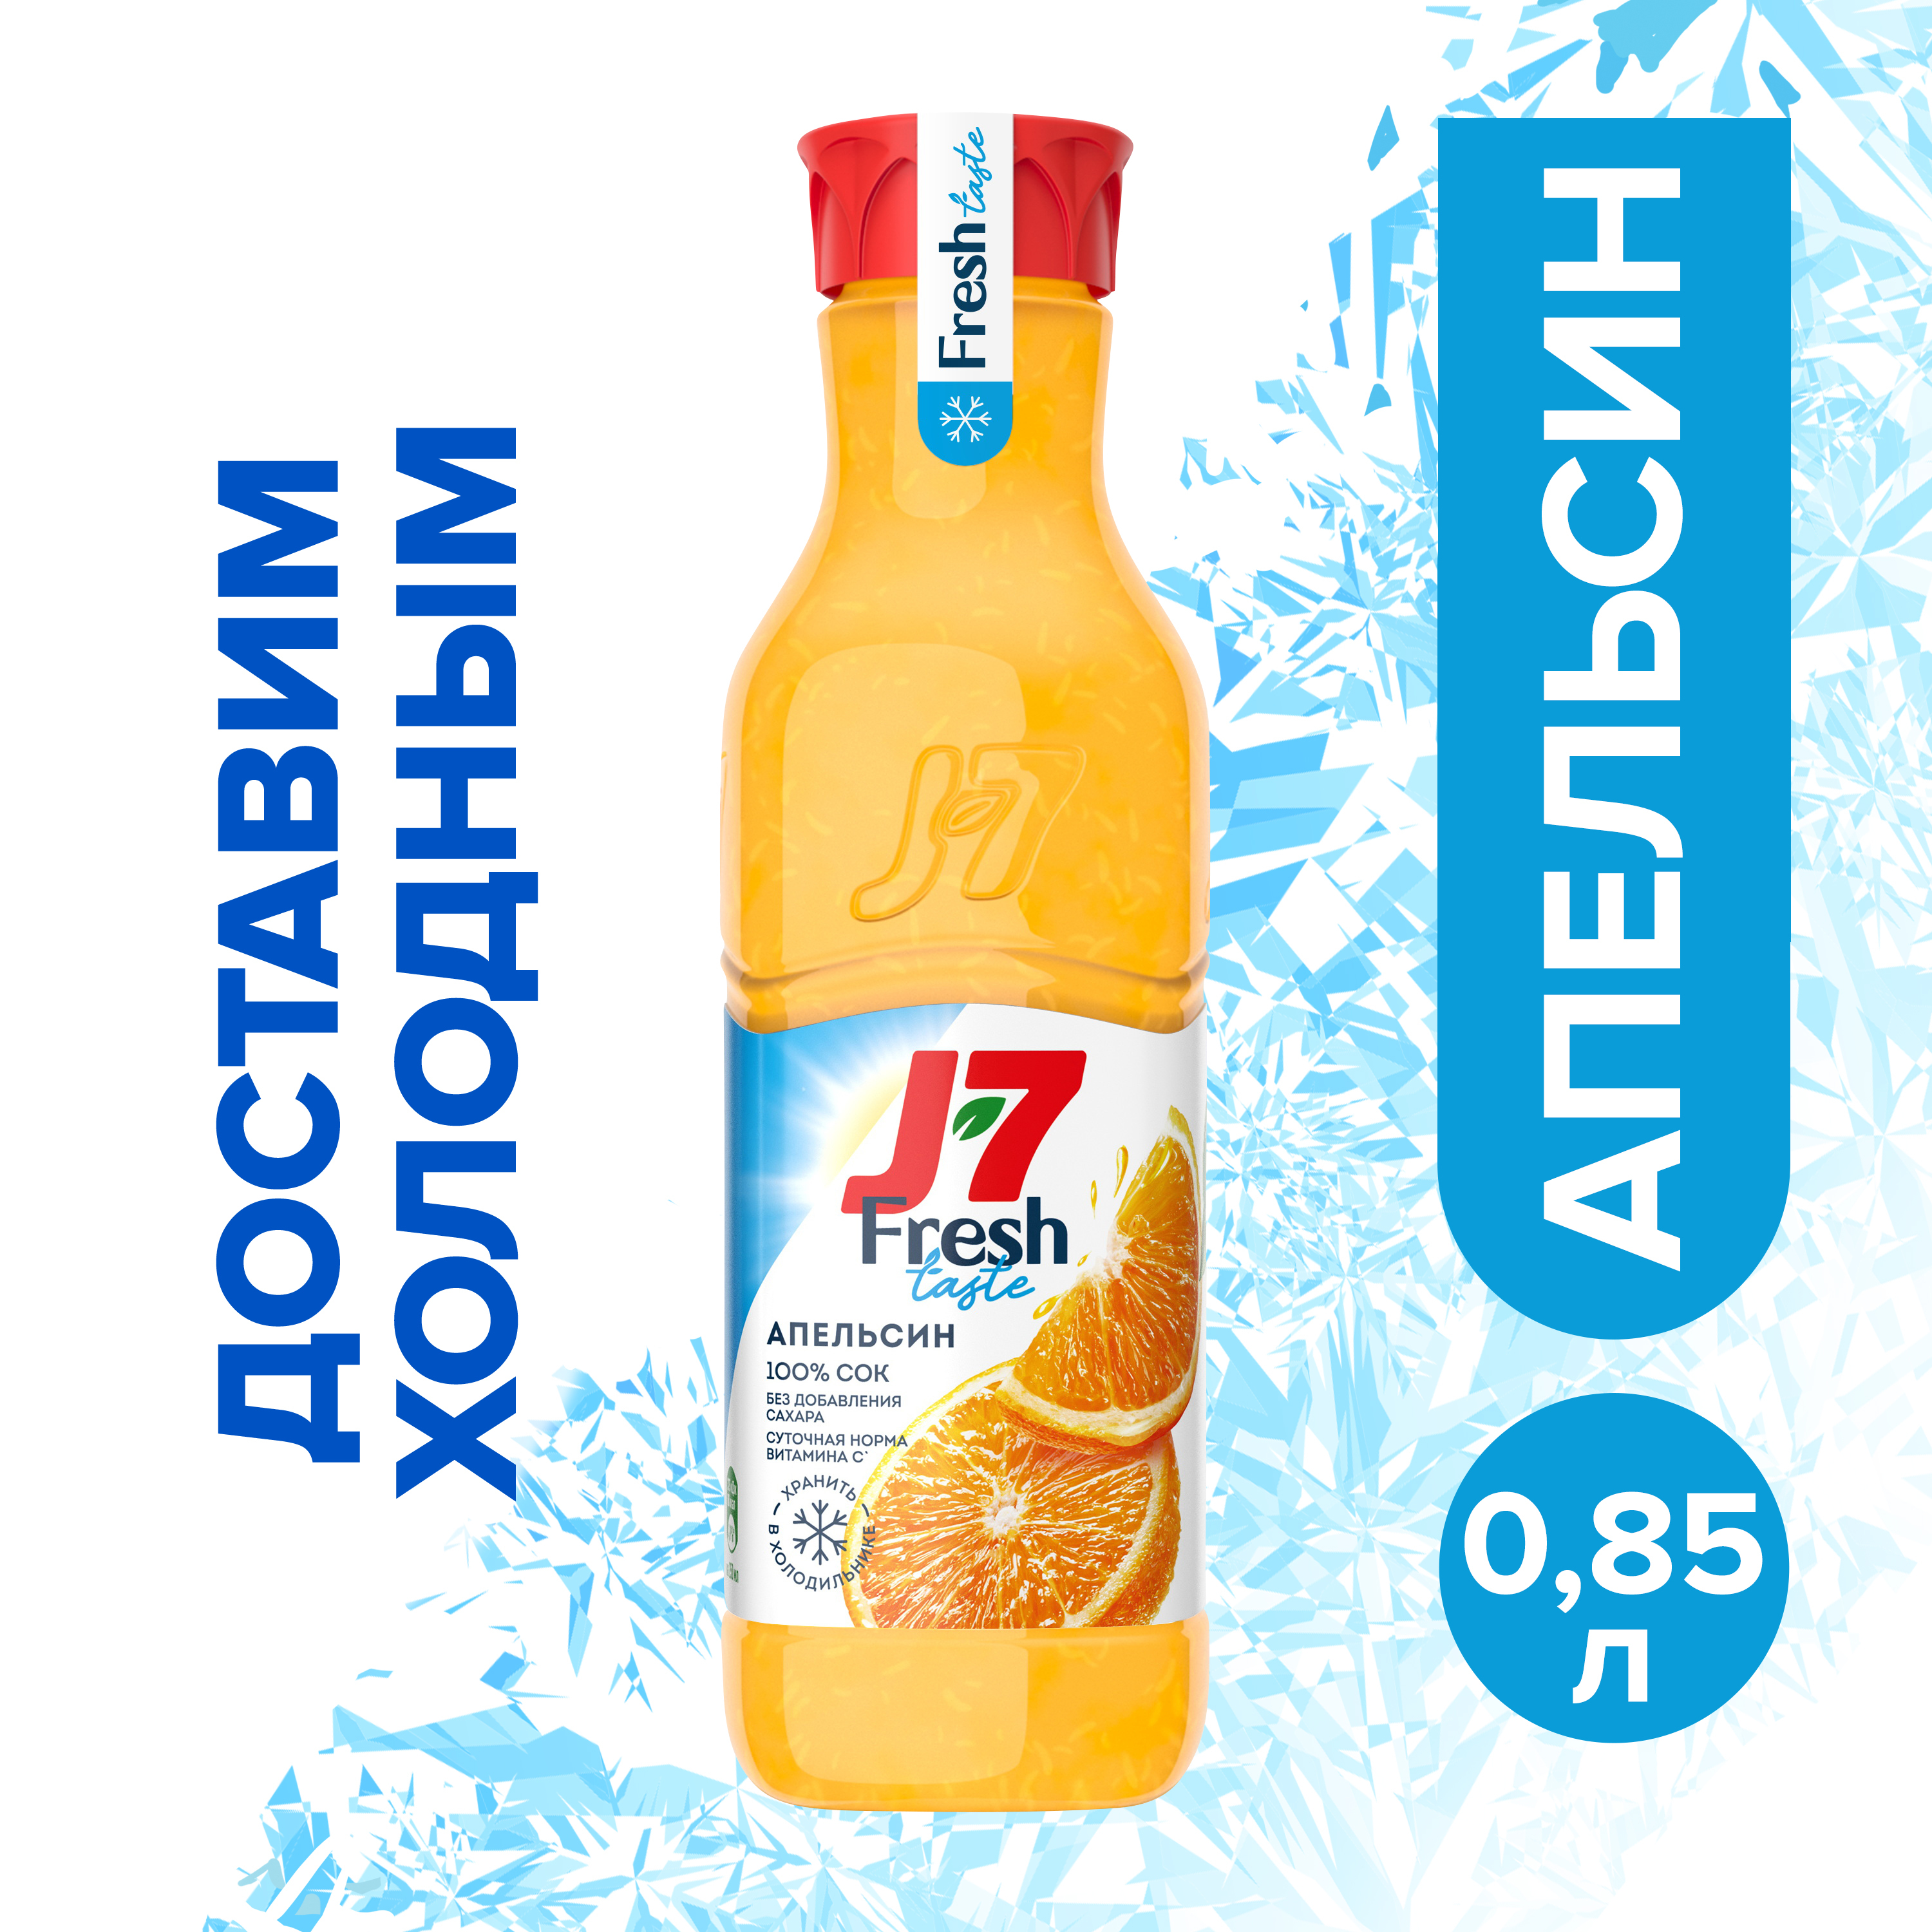 J7 fresh. Сок j7 Fresh taste. J7 Fresh taste сок апельсин с мякотью. Сок j7 апельсин 0,85. J7 Fresh taste апельсин.